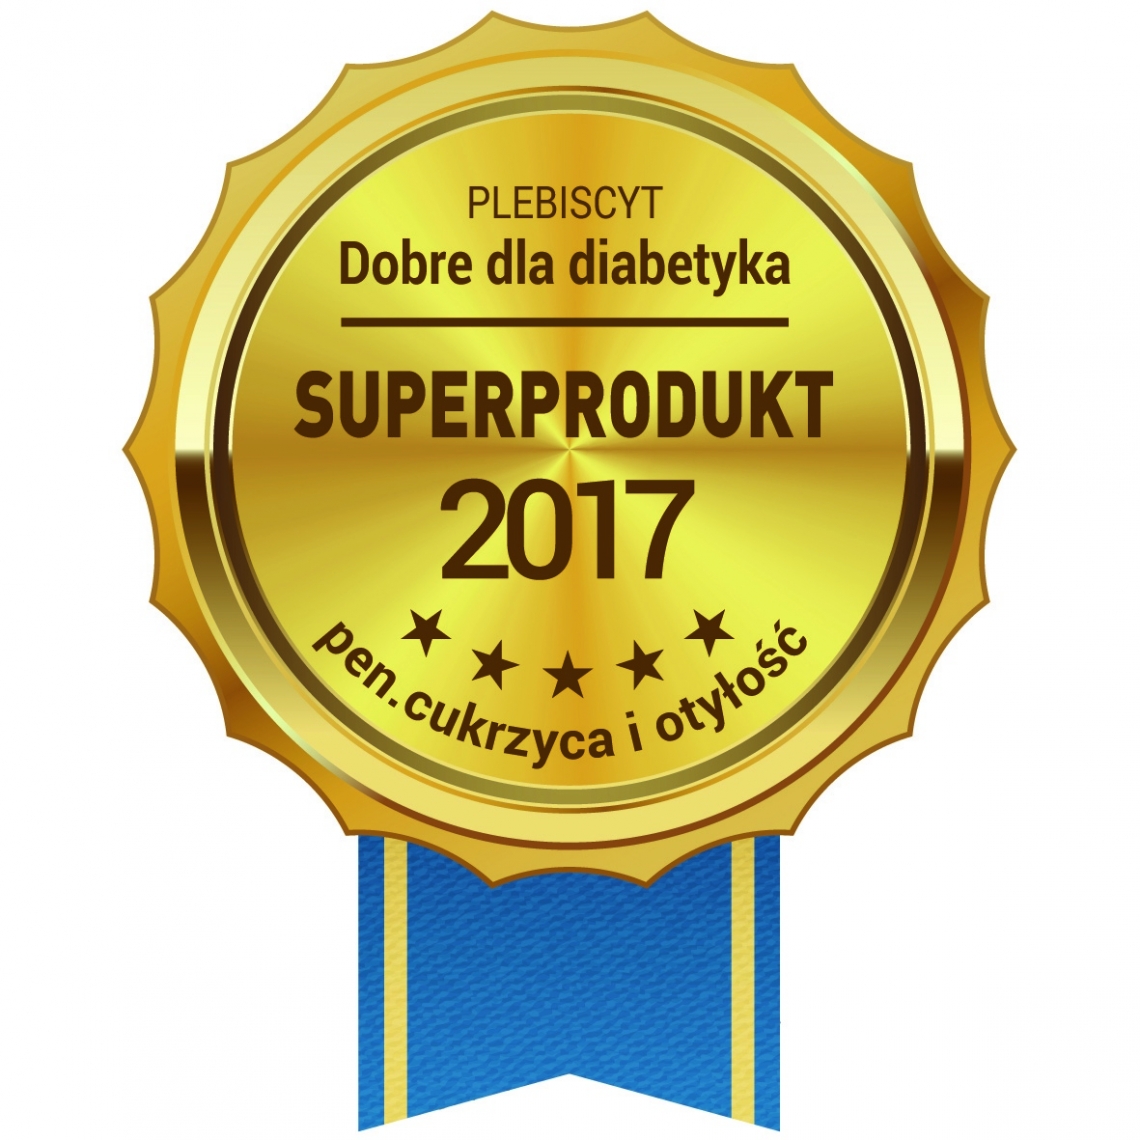 Superprodukt 2017